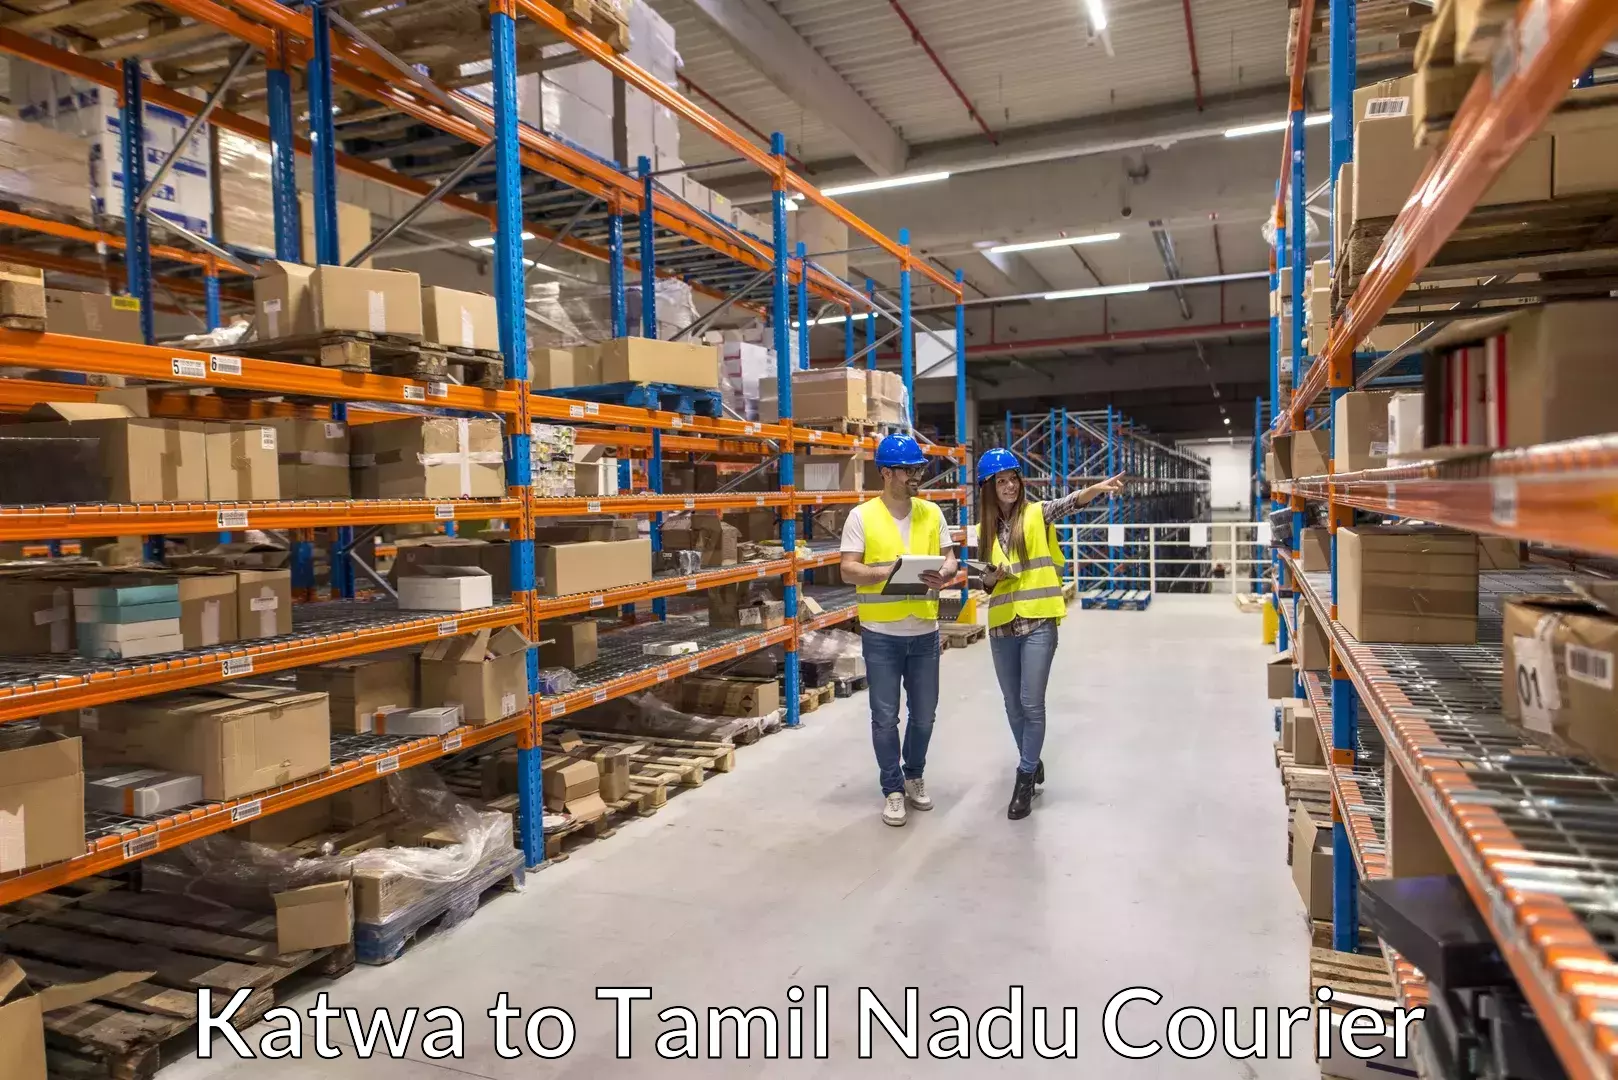 Luggage transport operations Katwa to Tamil Nadu